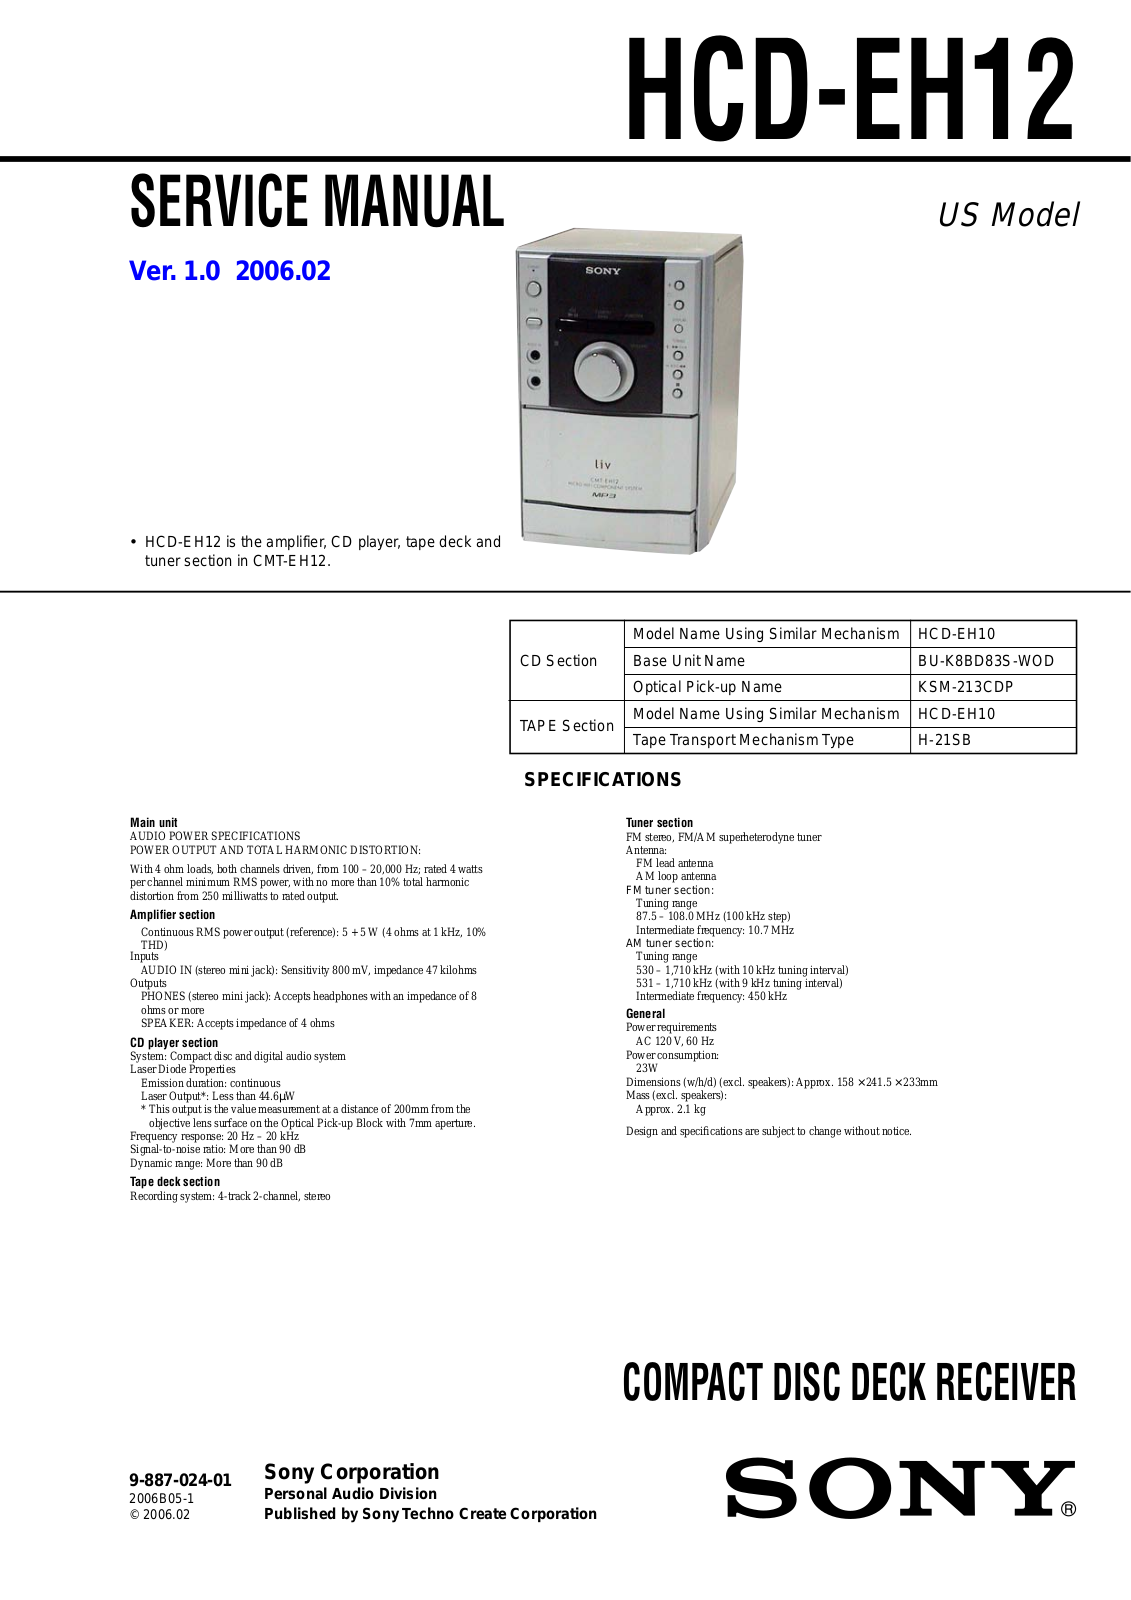 Sony HCDEH-12 Service manual